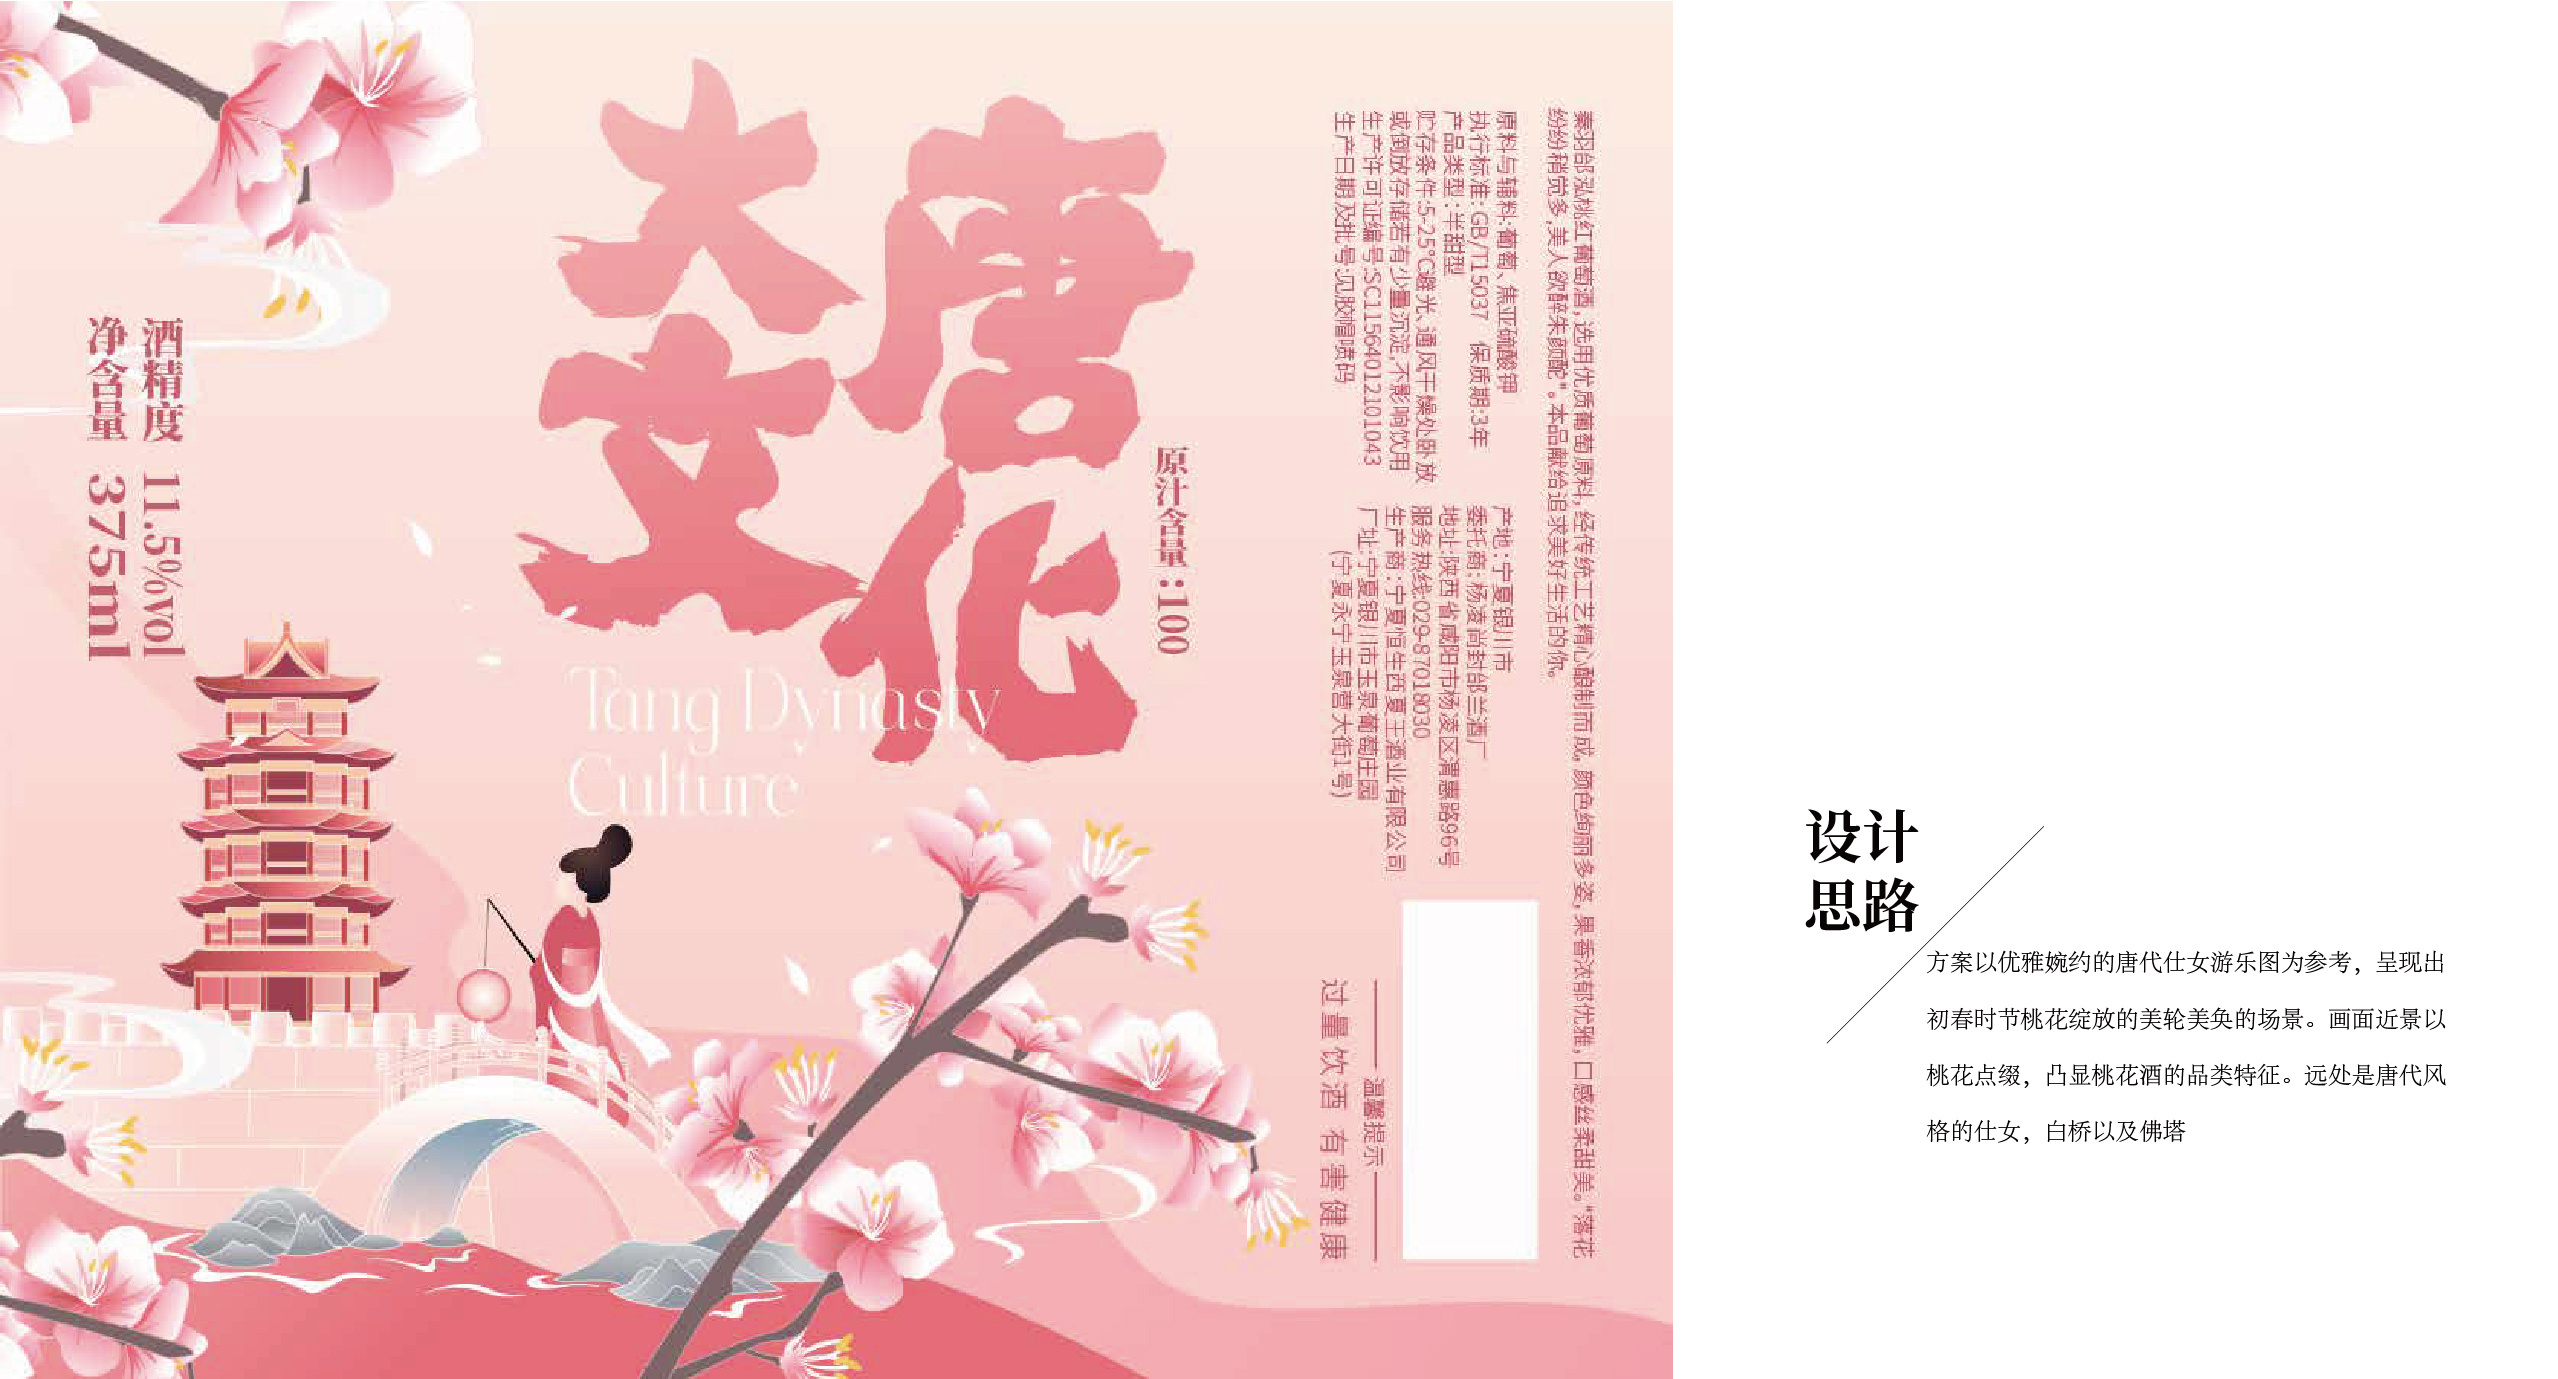 大唐文化陕西文创旅游纪念品包装设计红酒瓶贴设计案例文创